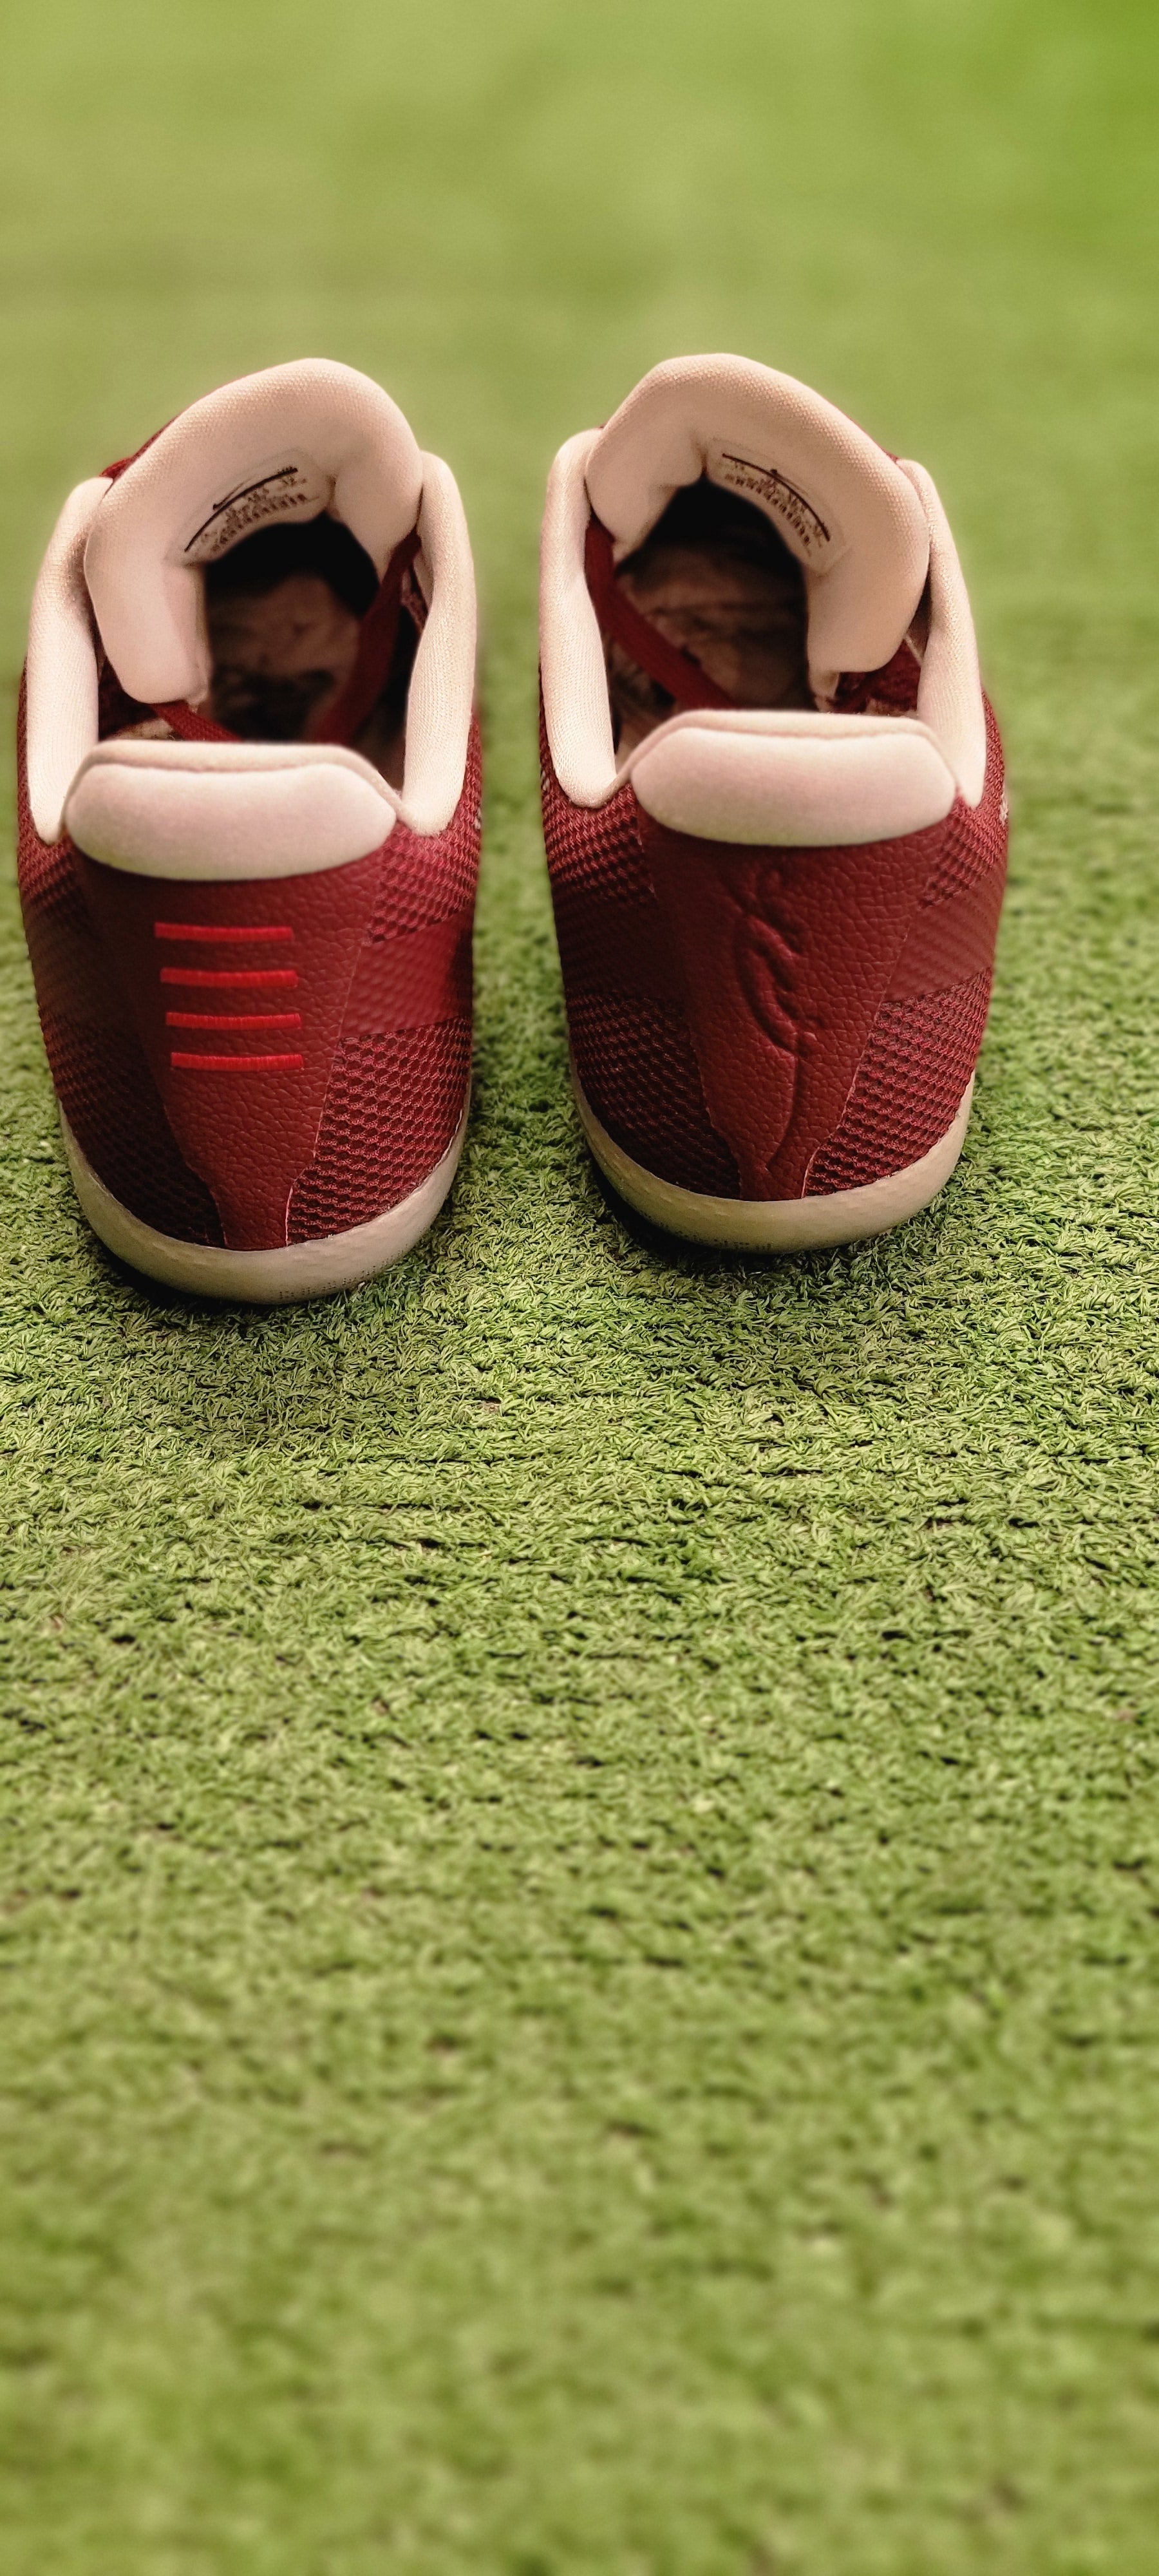 Nike Kobe 11 Low Team Red Sample Size 14 Men Shoes